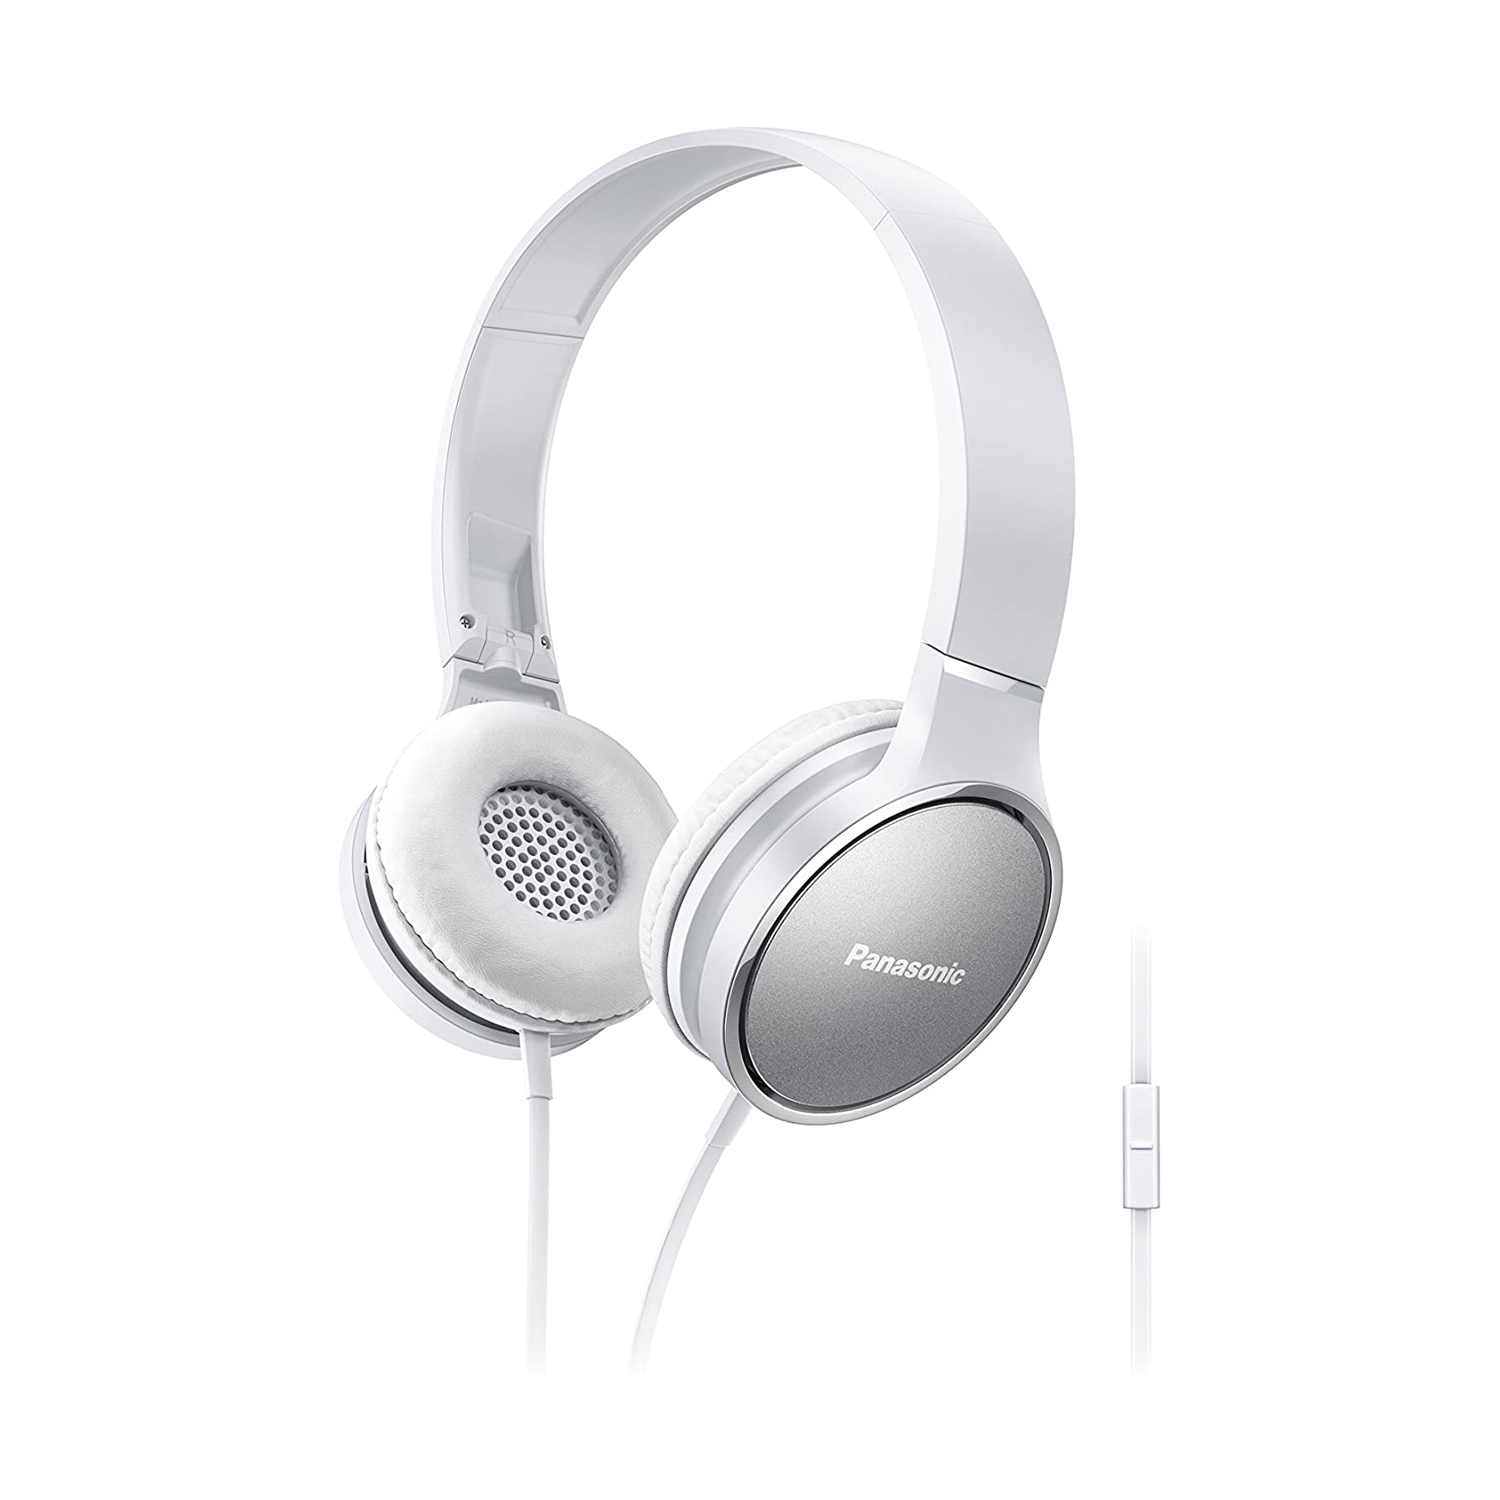 Sound Panasonic Premium sur les écouteurs stéréo Ear RP-HF300M avec micro et contrôleur intégrés - blanc